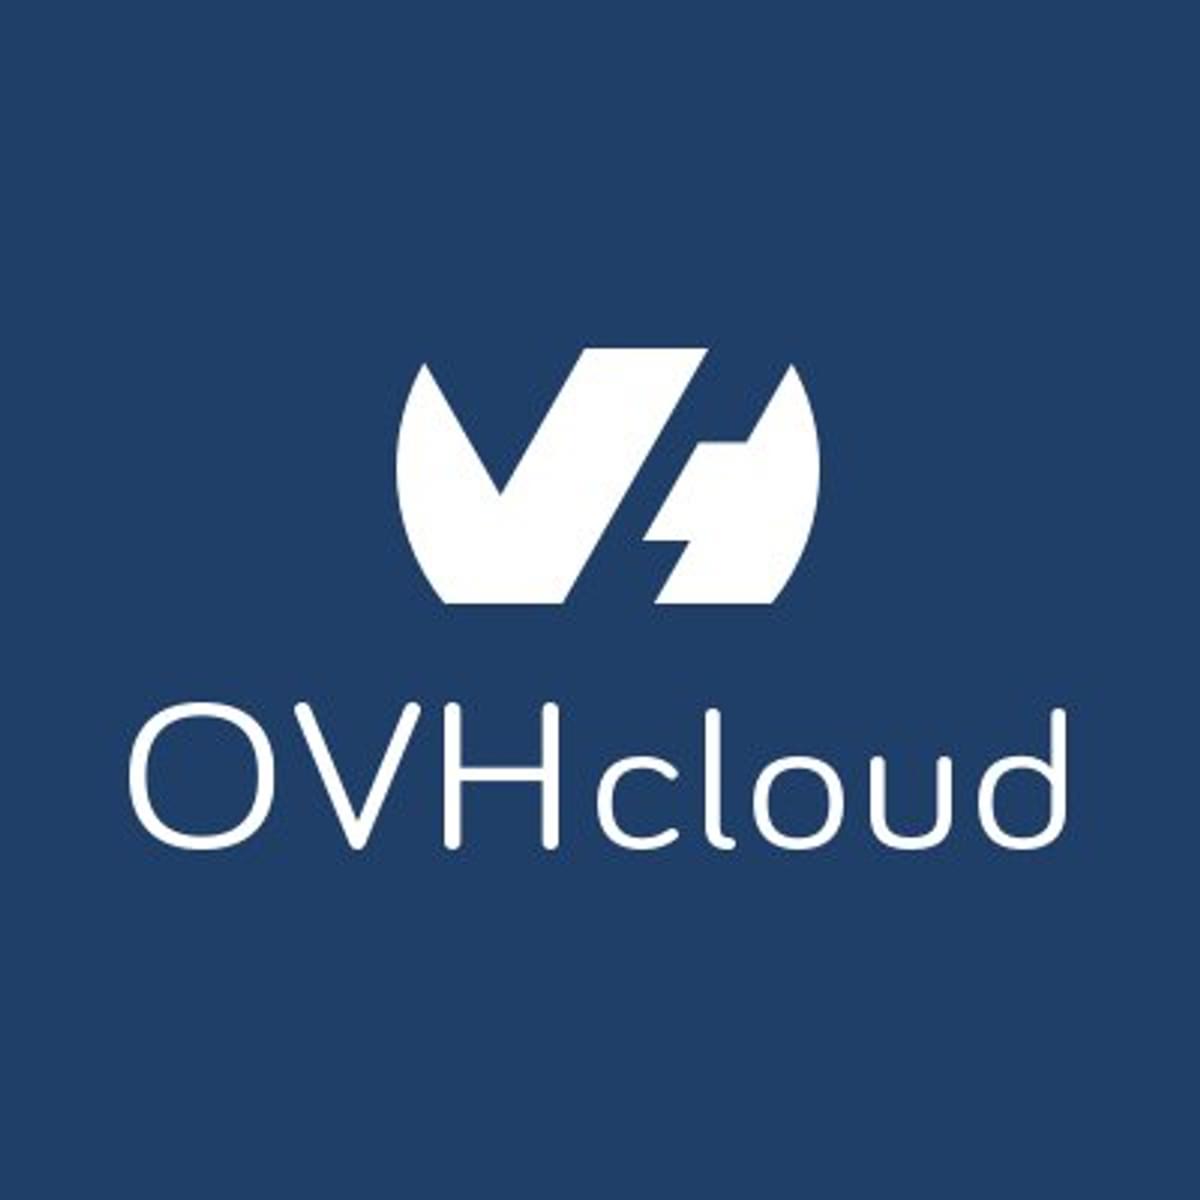 Cloud aanbieder OVH is omgedoopt tot OVHcloud image